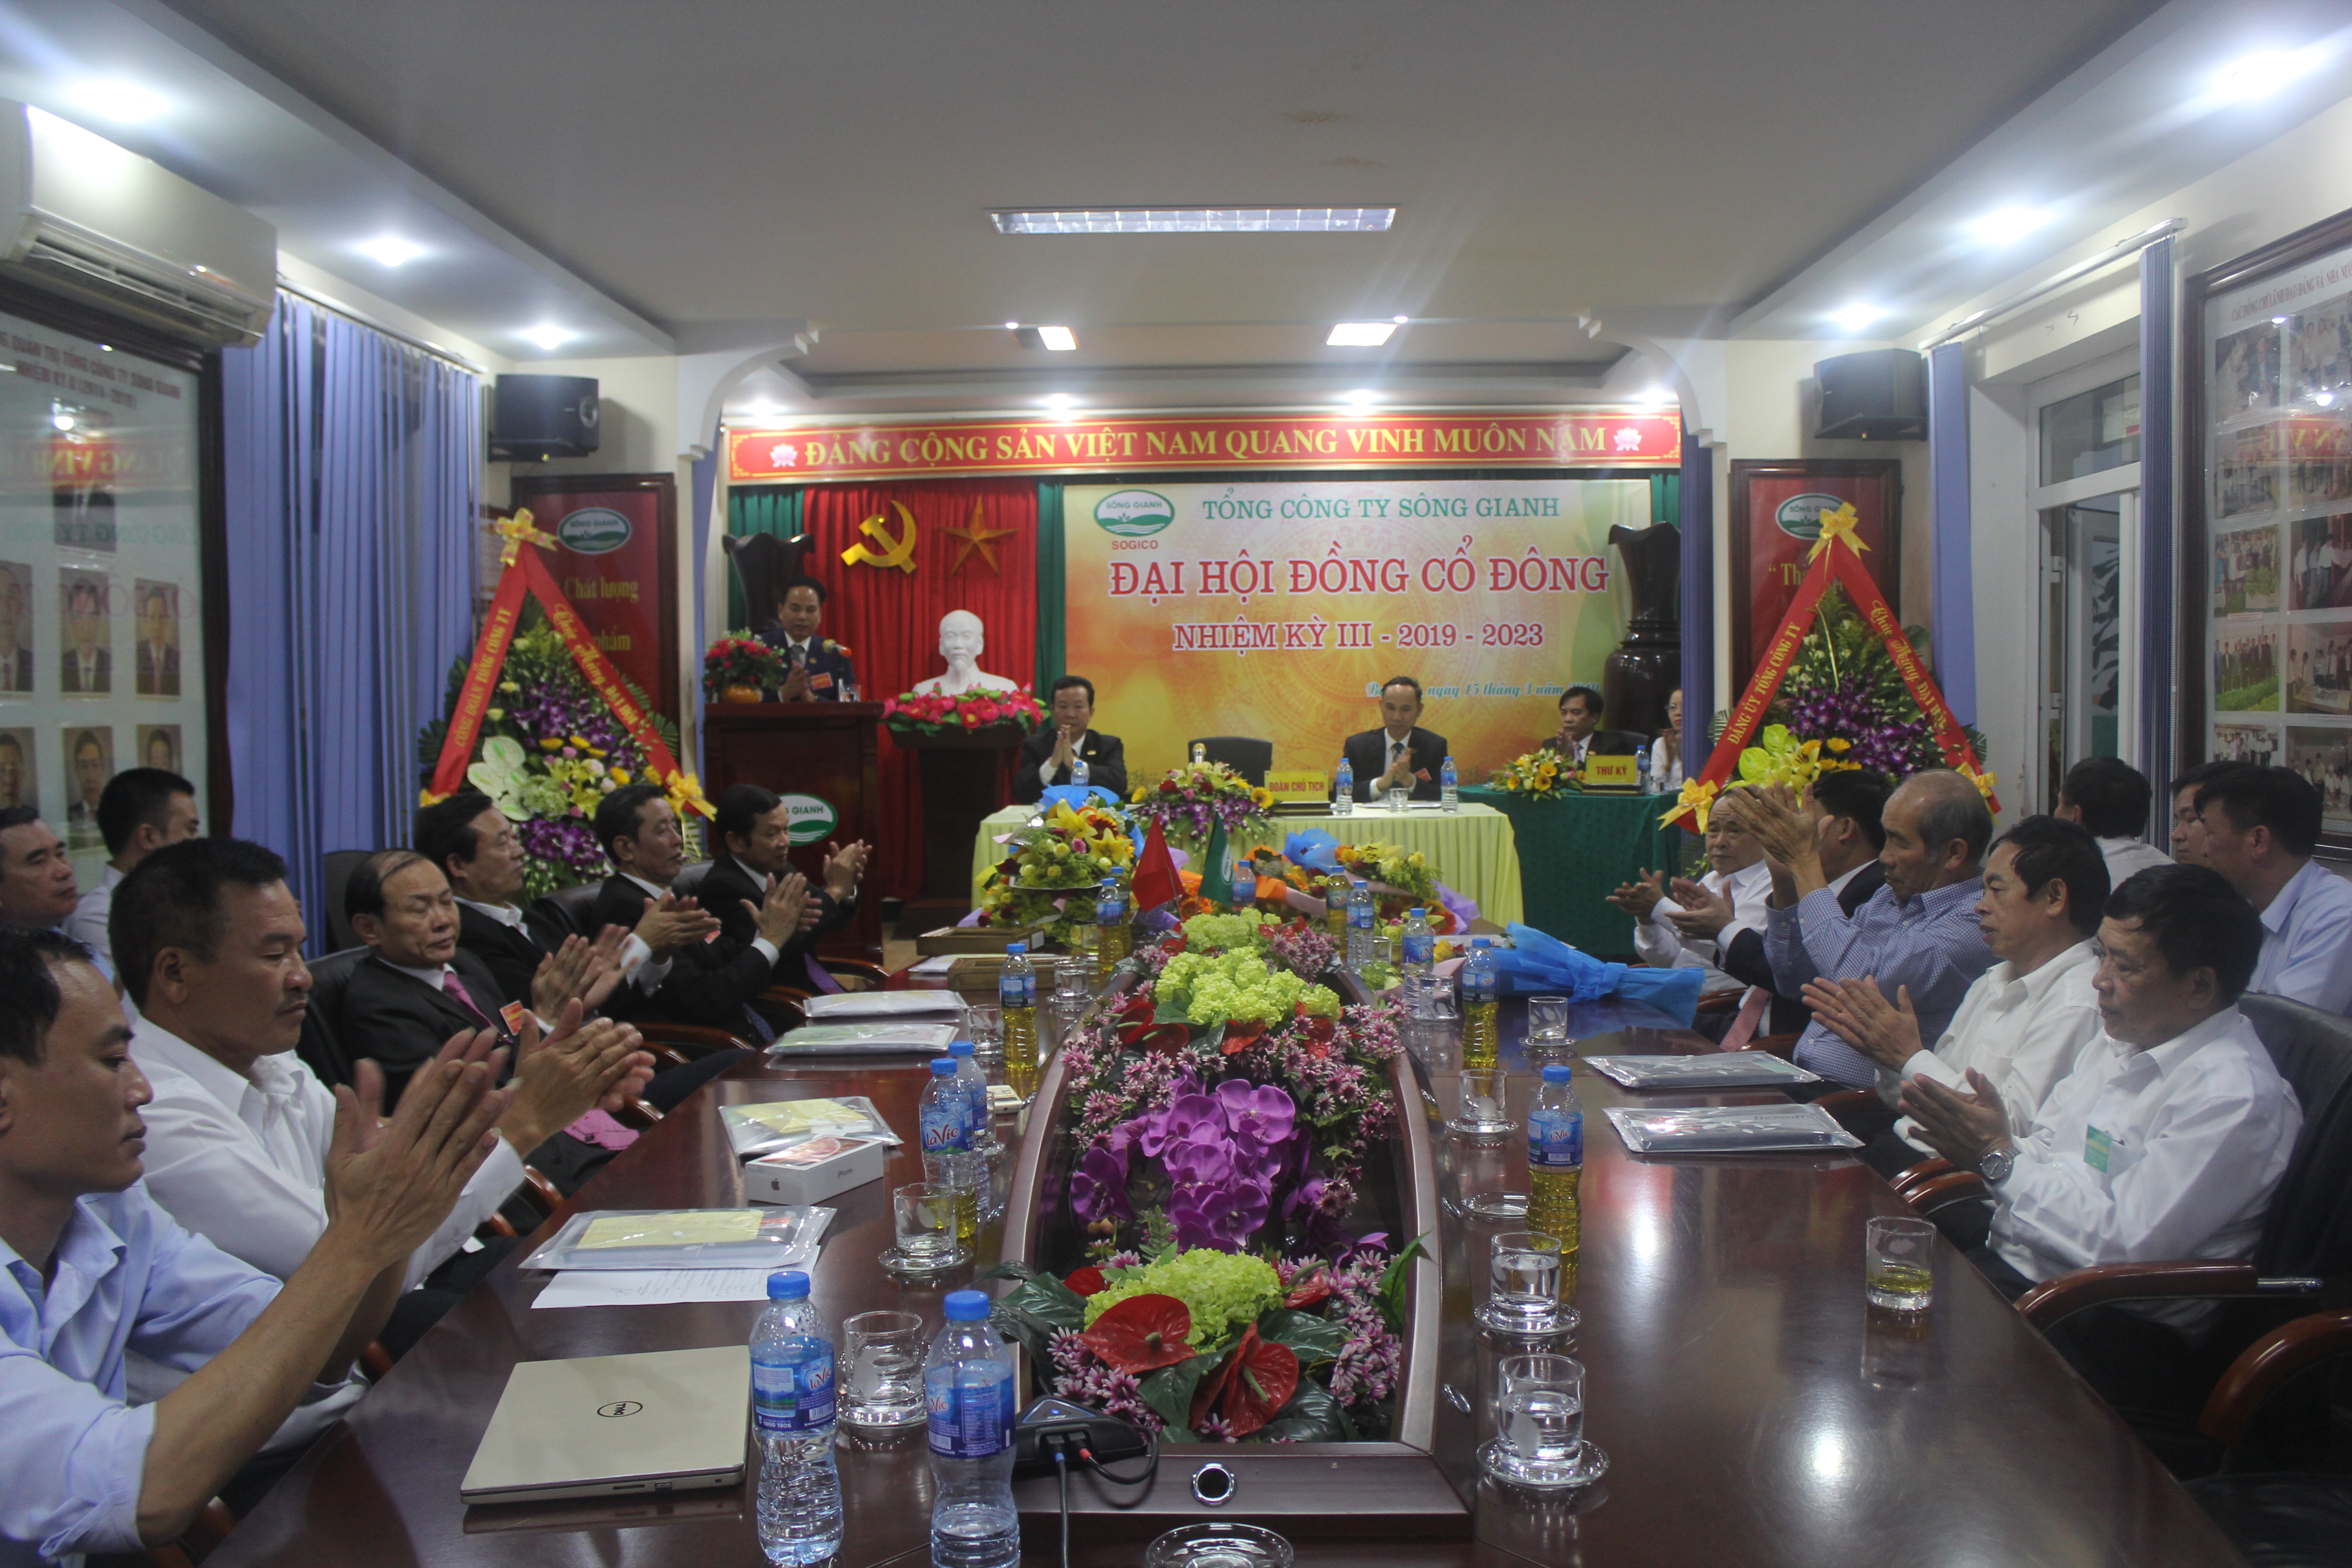 Tổng công ty Sông Gianh tổ chức thành công Đại hội đồng cổ đông nhiệm kỳ III năm 2019 - 2023 